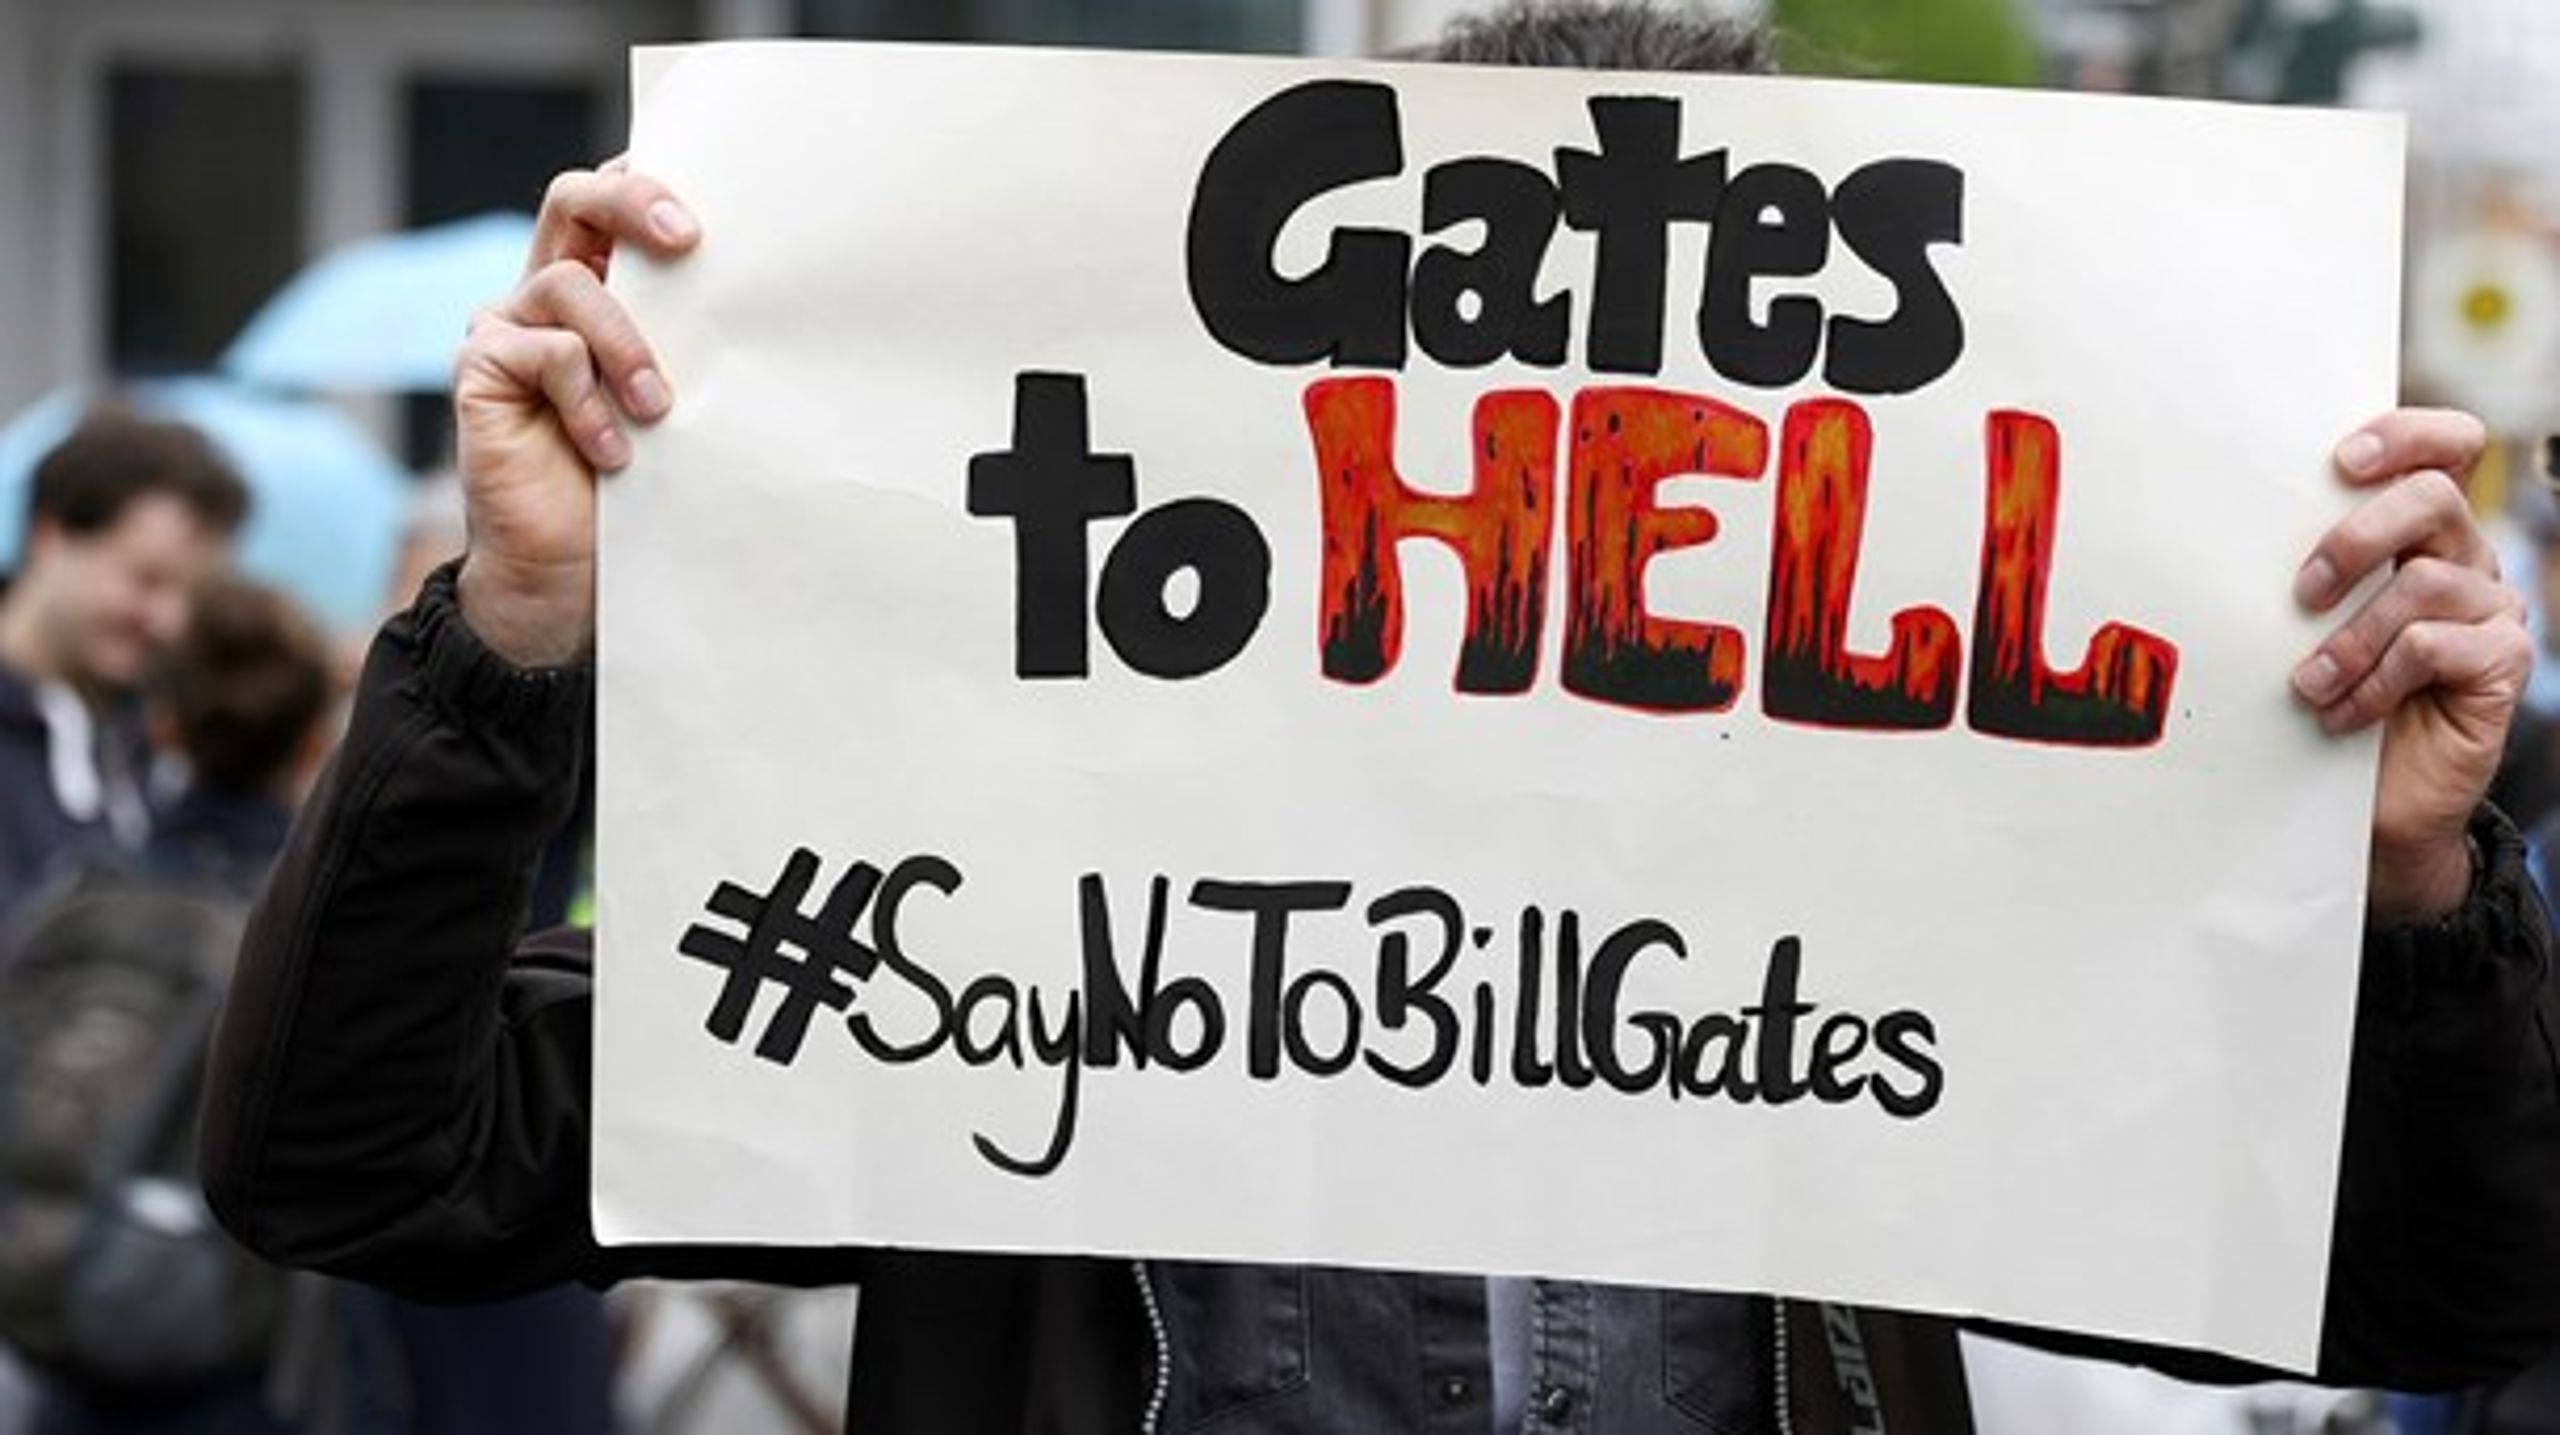 Demonstranter samledes den 25. april i Berlin mod
nedlukningen af det tyske samfund på grund af den nye coronavirus. På et skilt er
Bill Gates udset som den store skurk.